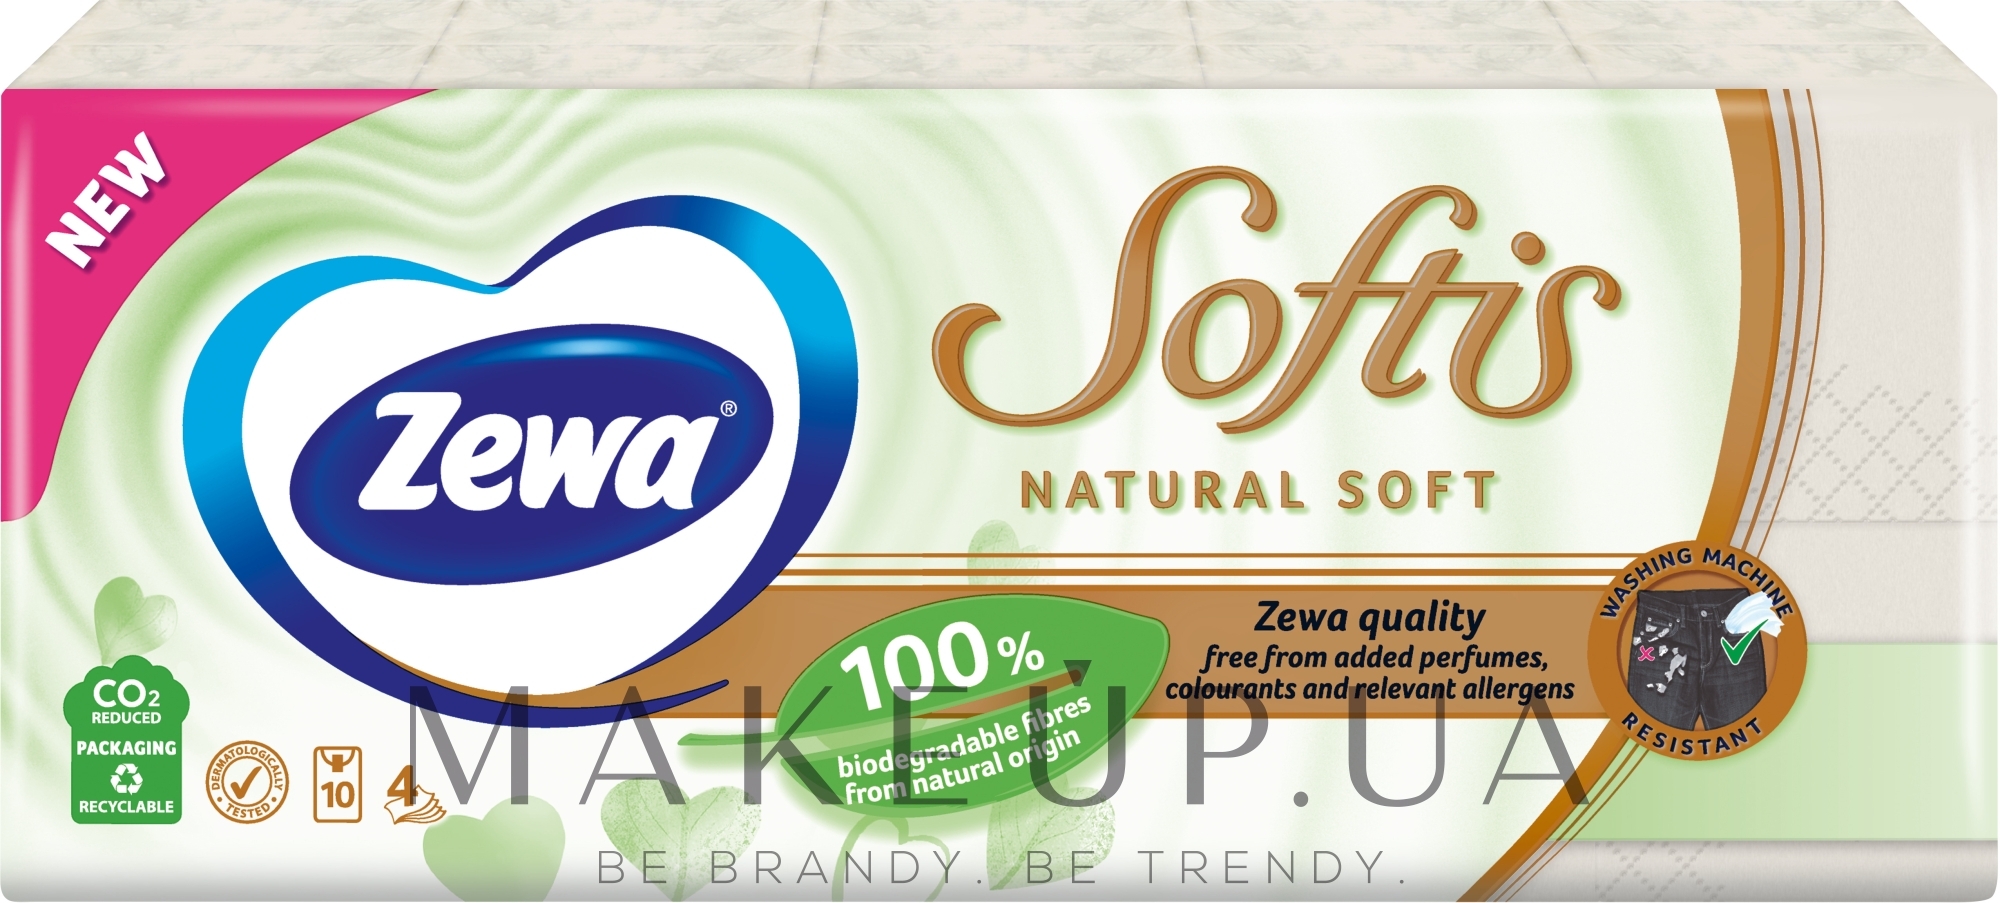 Носові хустинки паперові без аромату, чотиришарові, 10 упаковок по 9 шт - Zewa Softis Natural Soft — фото 10x9шт